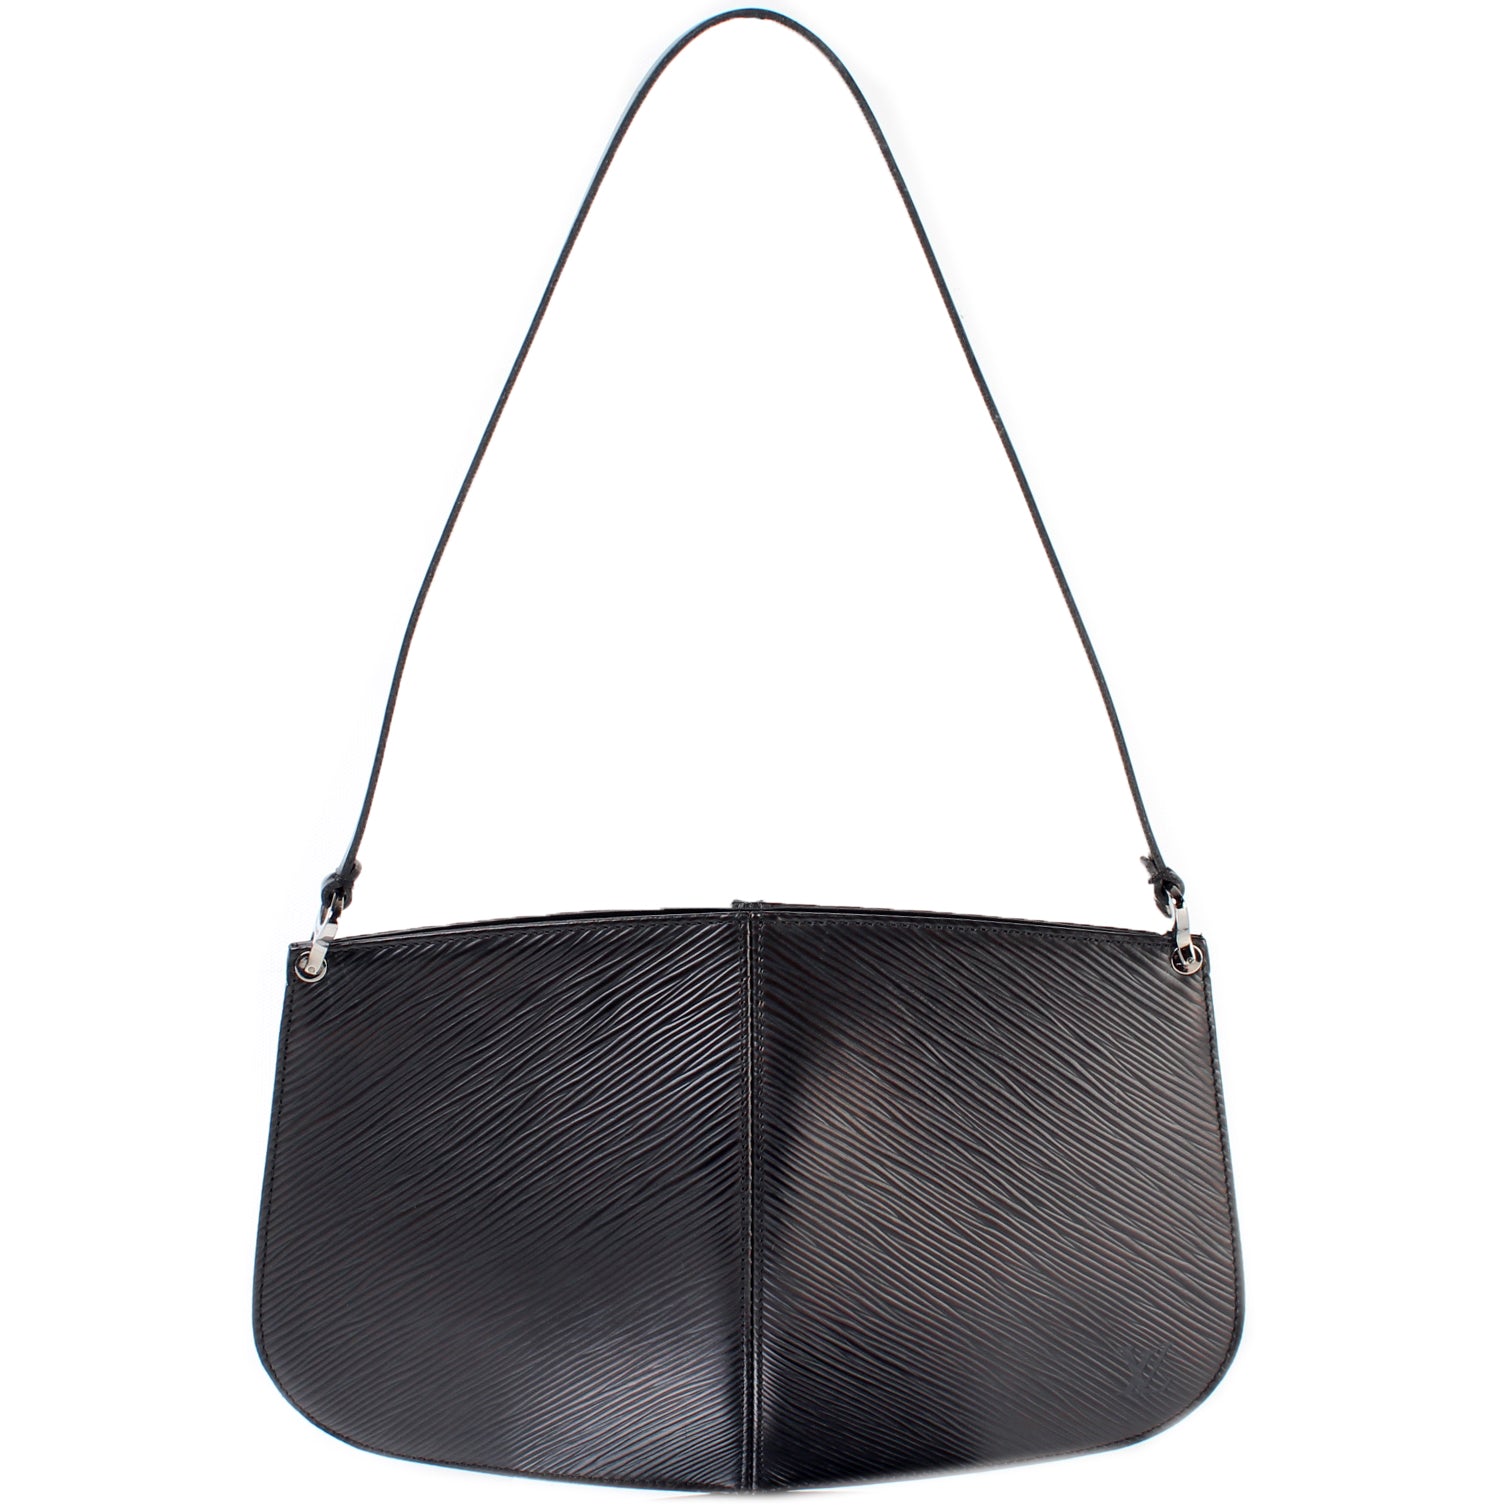 Authentic Louis Vuitton Demi Lune Epi leather Pochette bag